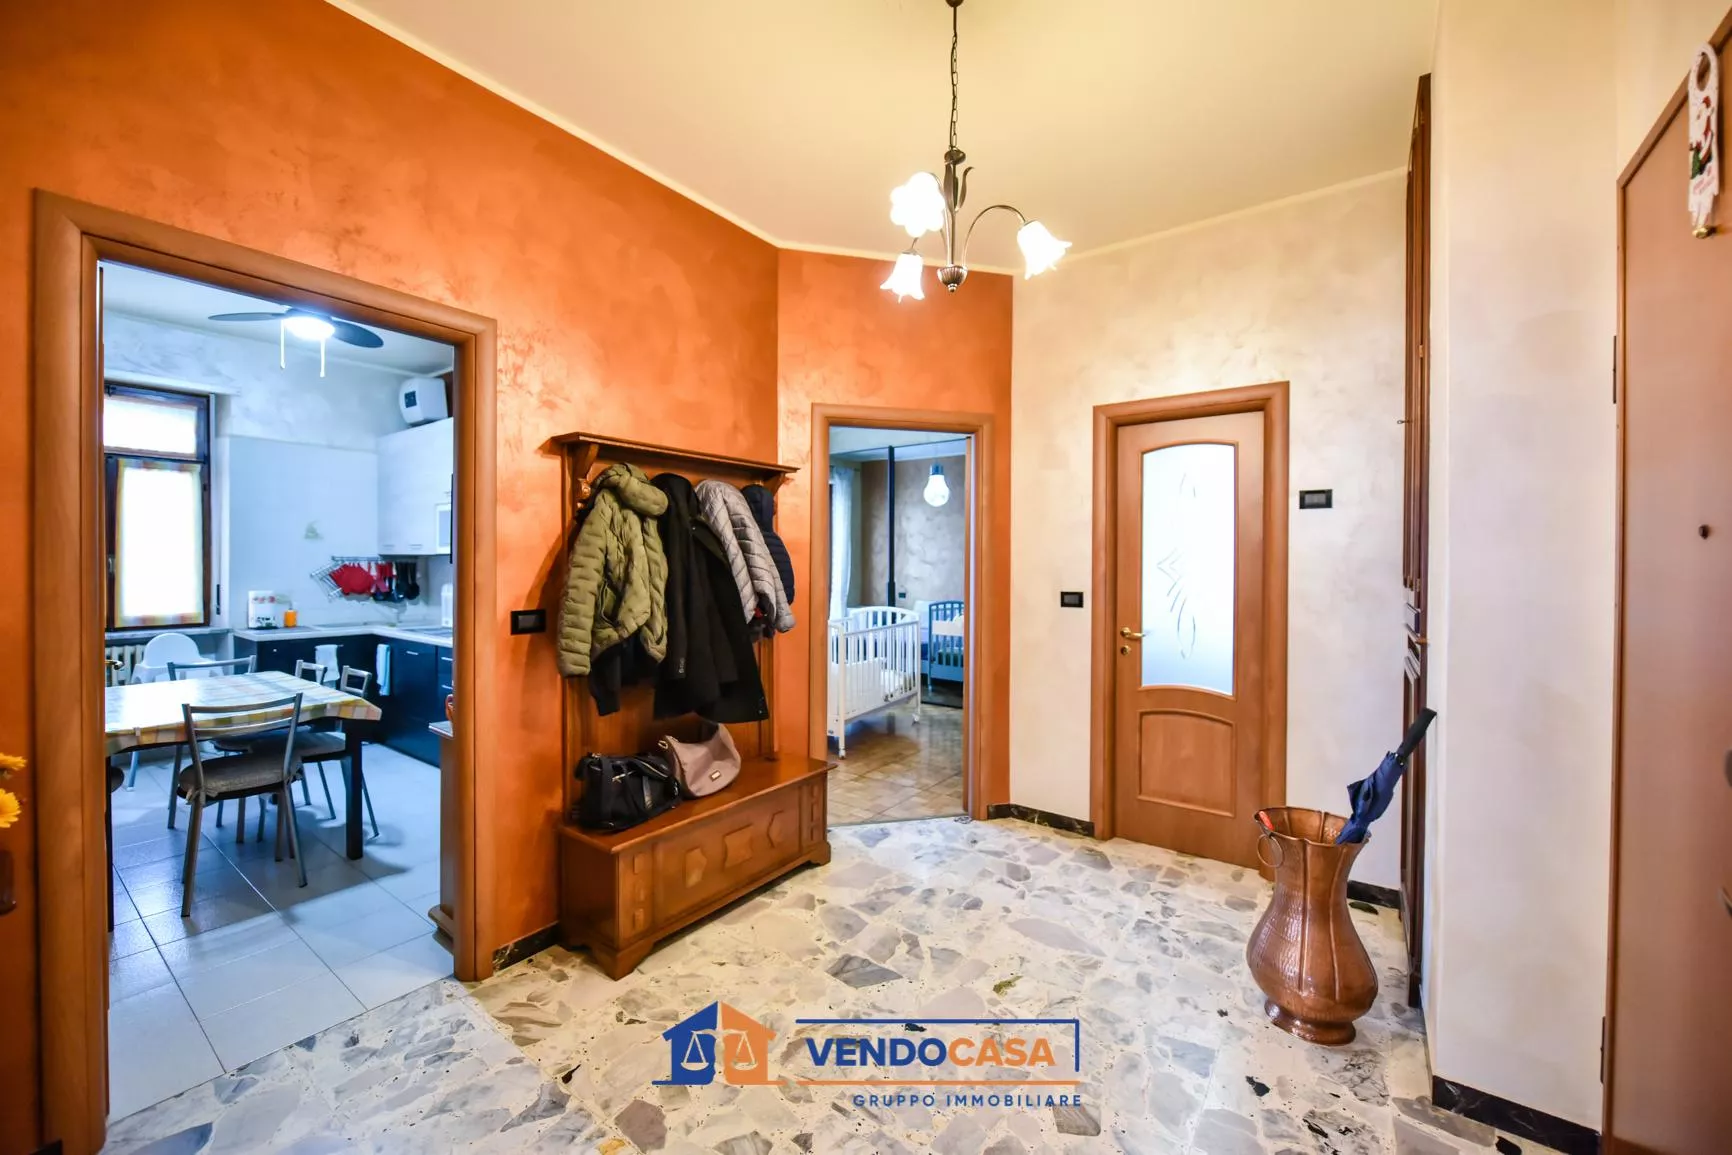 Immagine per Appartamento in vendita a Villastellone via Borgo Nuovo 34